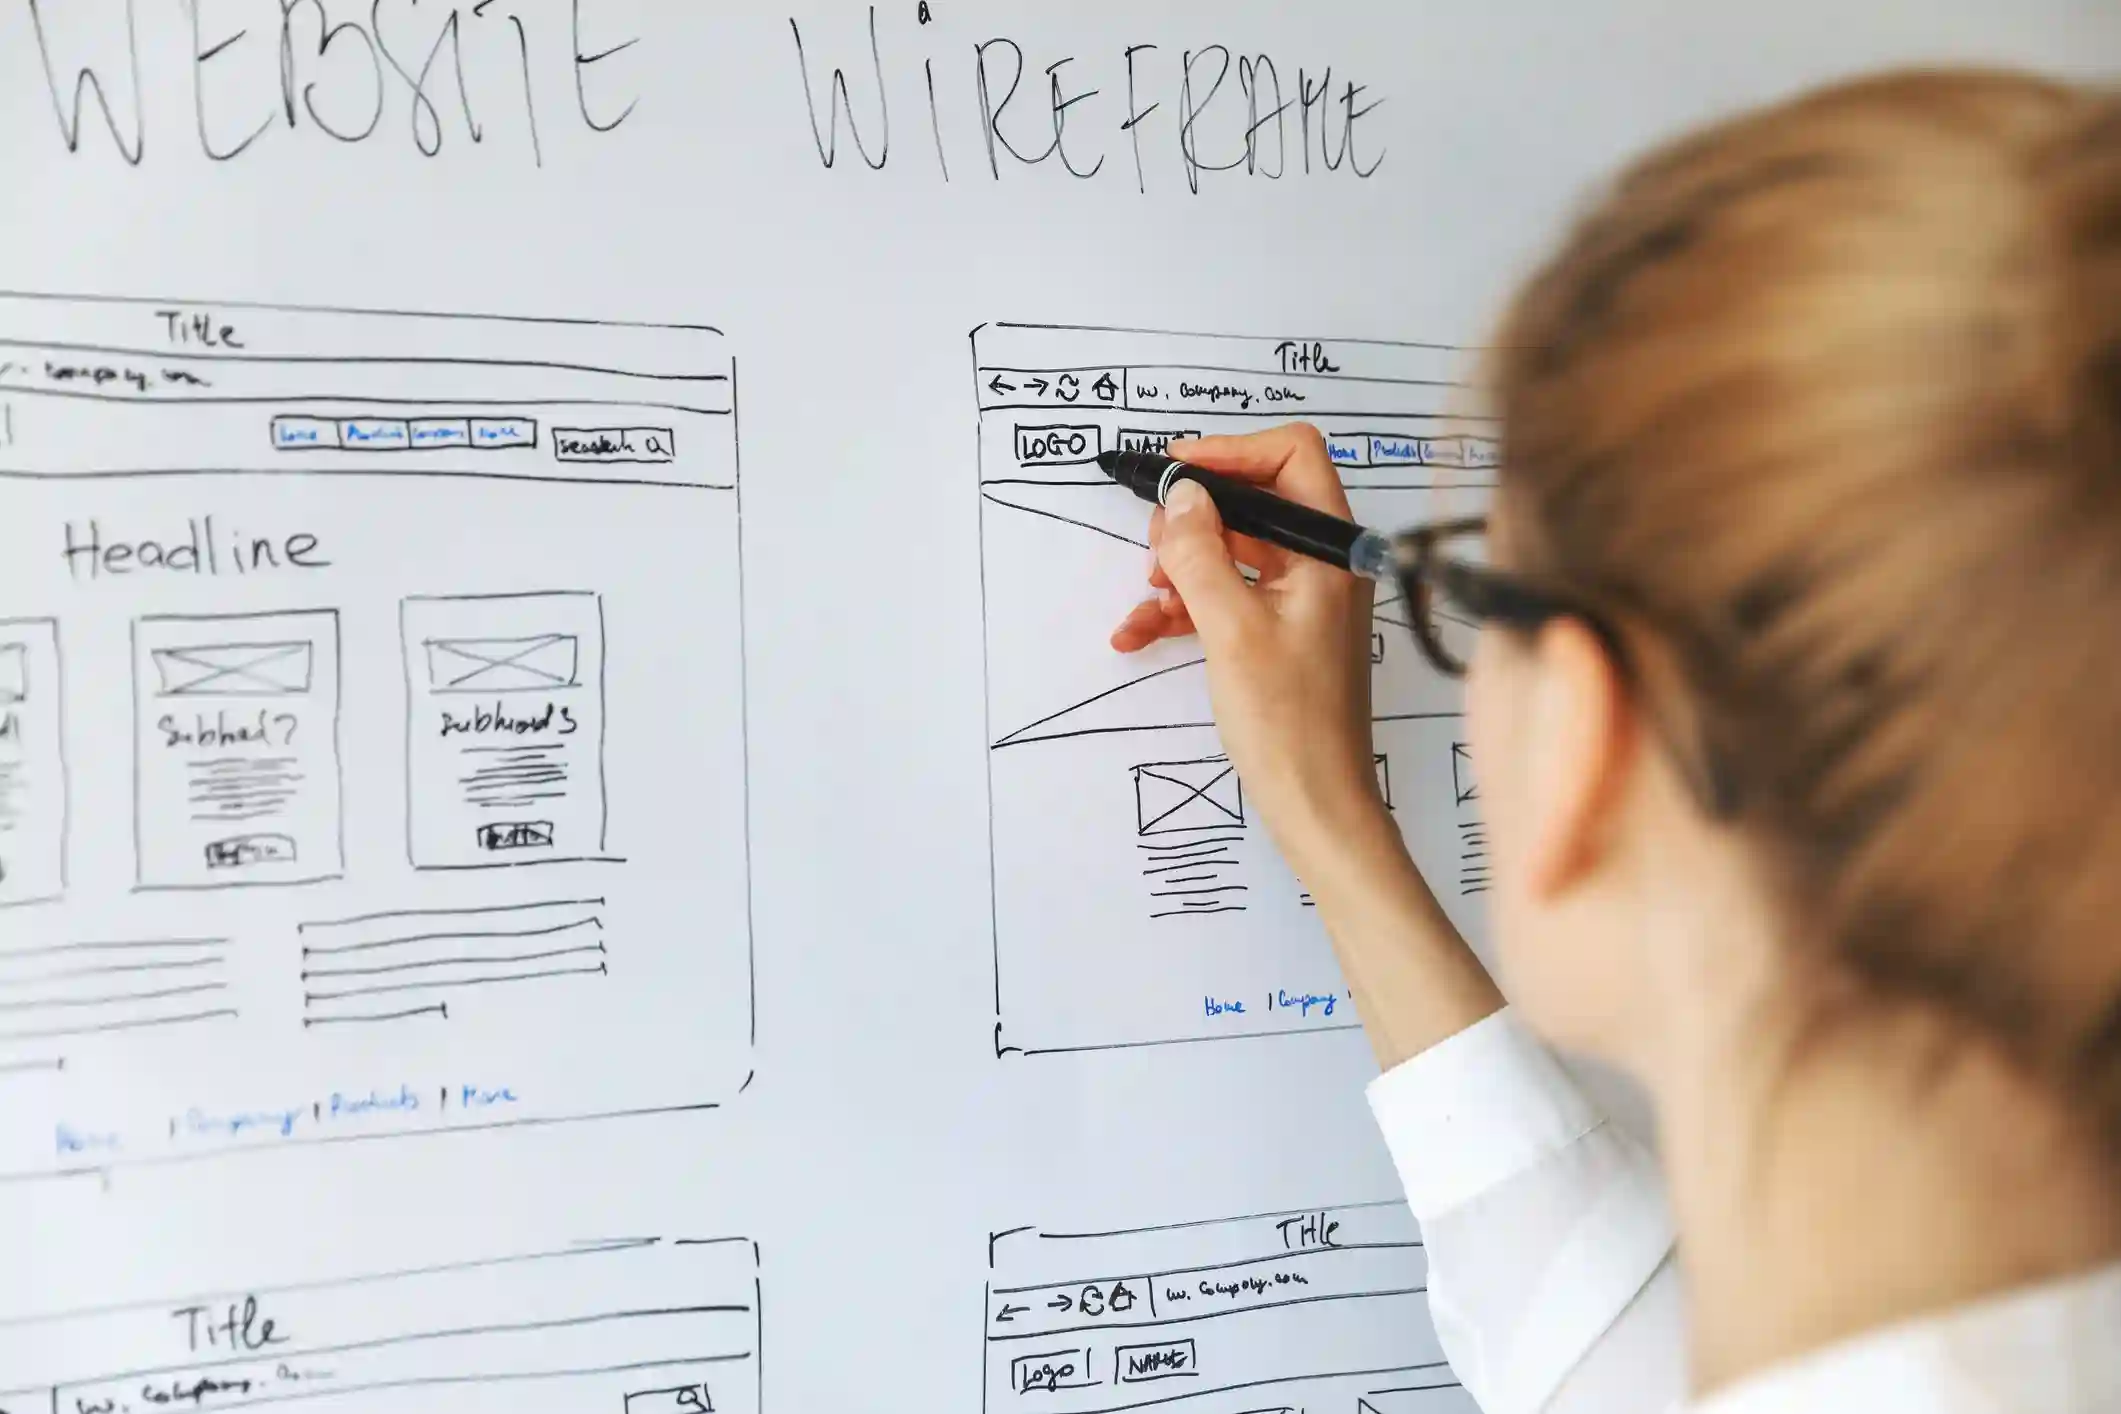 Une personne dessine des maquettes de sites web sur un tableau blanc, planifiant la structure et le contenu des pages. Le mot 'WEBSITE WIREFRAME' est écrit en haut du tableau, indiquant le processus de conception de l'expérience utilisateur (UX Writing).